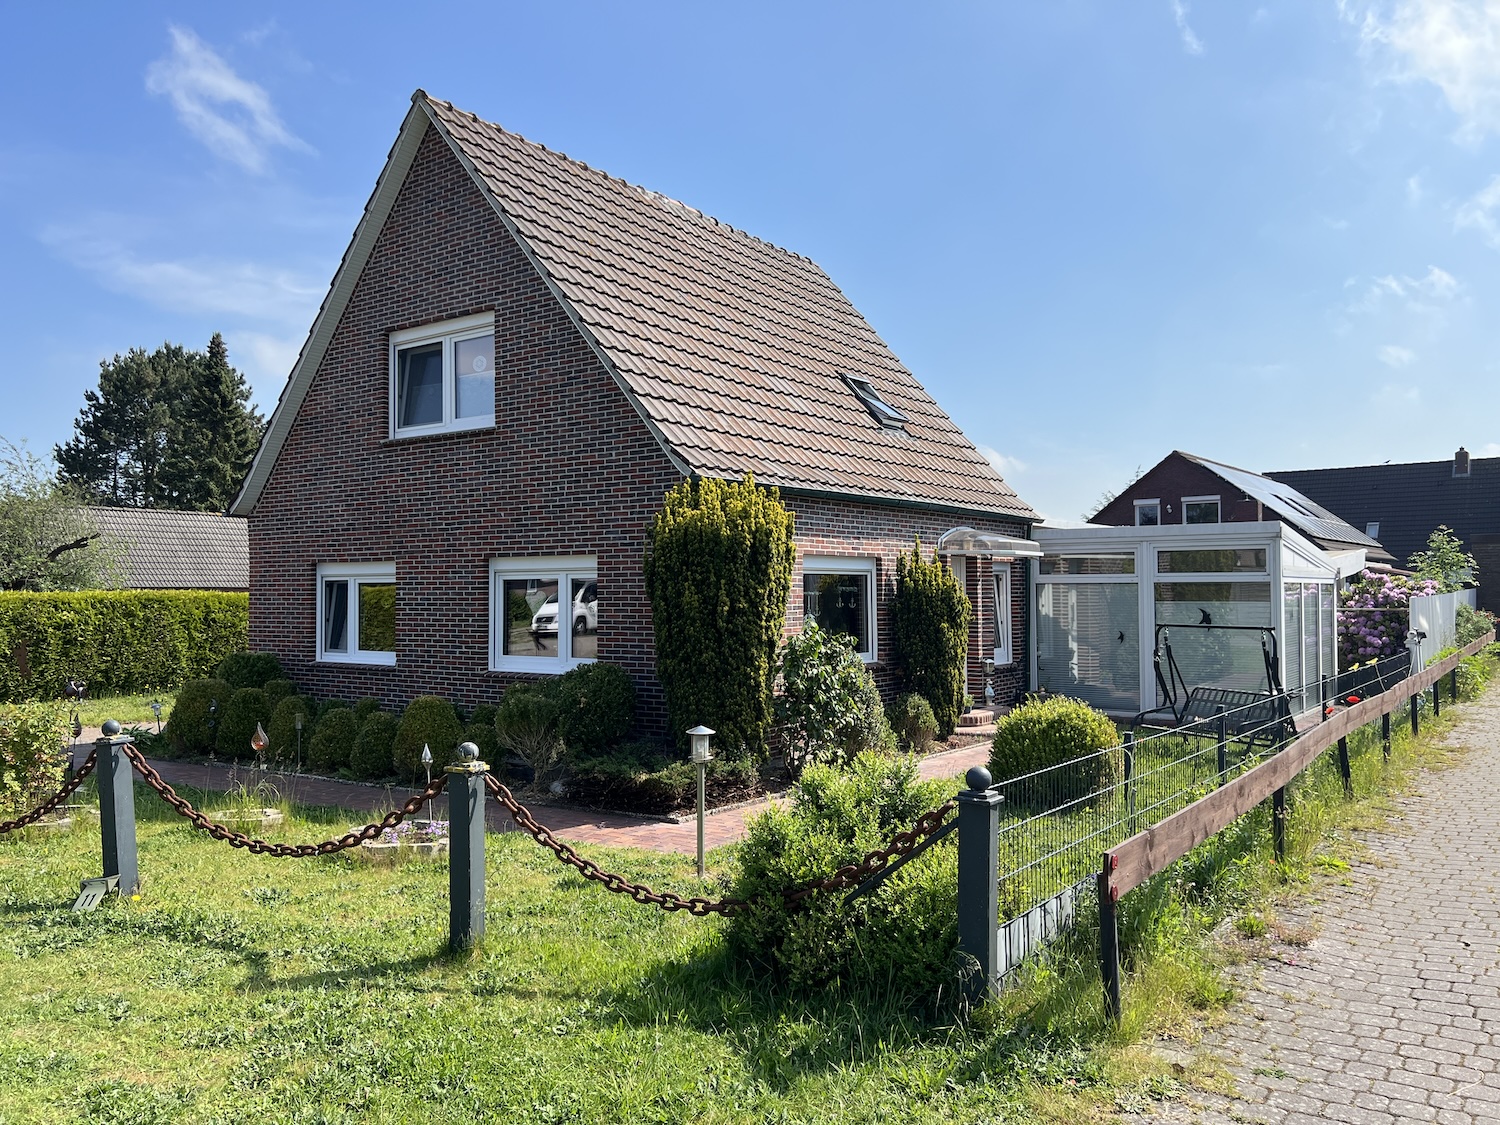 PROVISIONSFREI in Großheide: Gepflegtes Friesenhaus in Ostfriesland mit umfangreicher Ausstattung Immobilie kaufen an der Nordseeküste